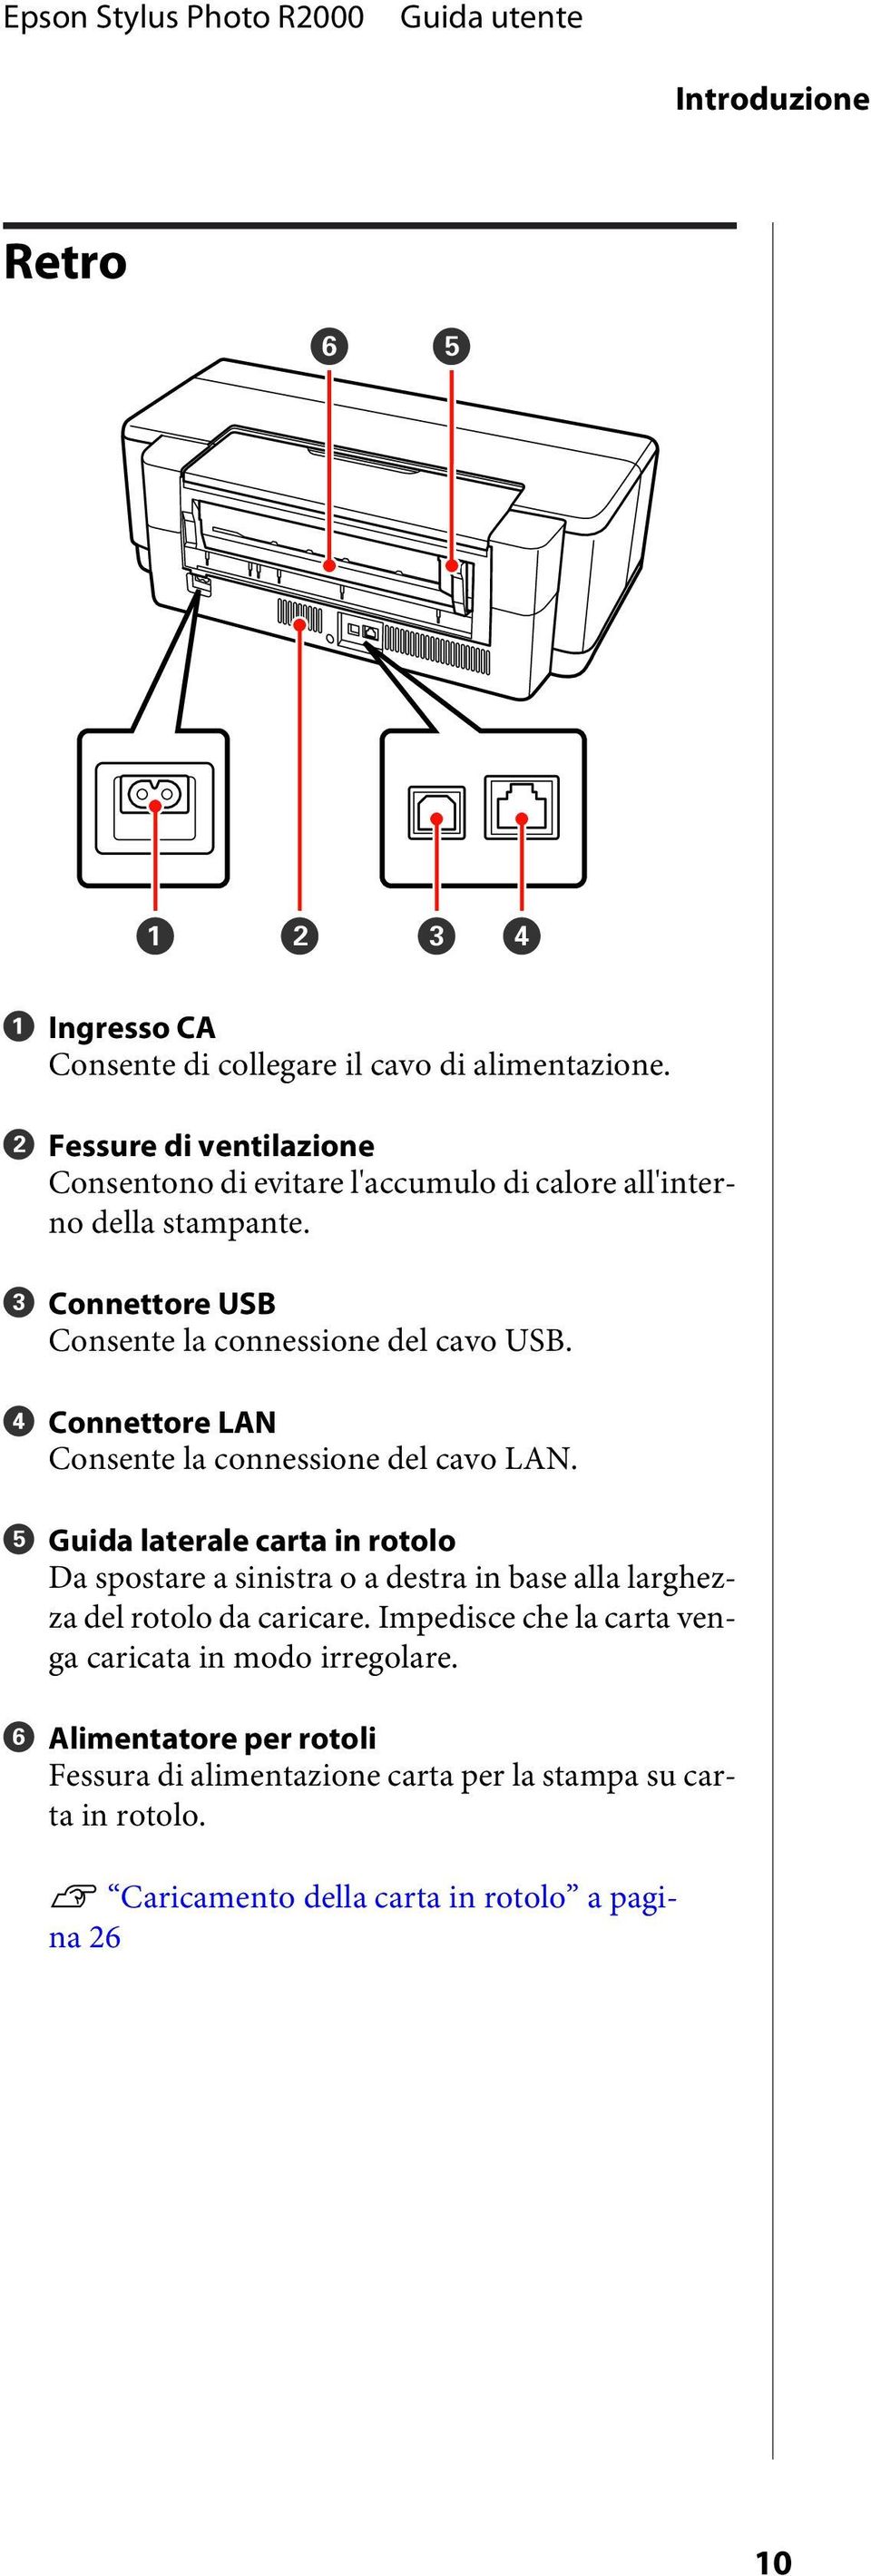 C Connettore USB Consente la connessione del cavo USB. D Connettore LAN Consente la connessione del cavo LAN.